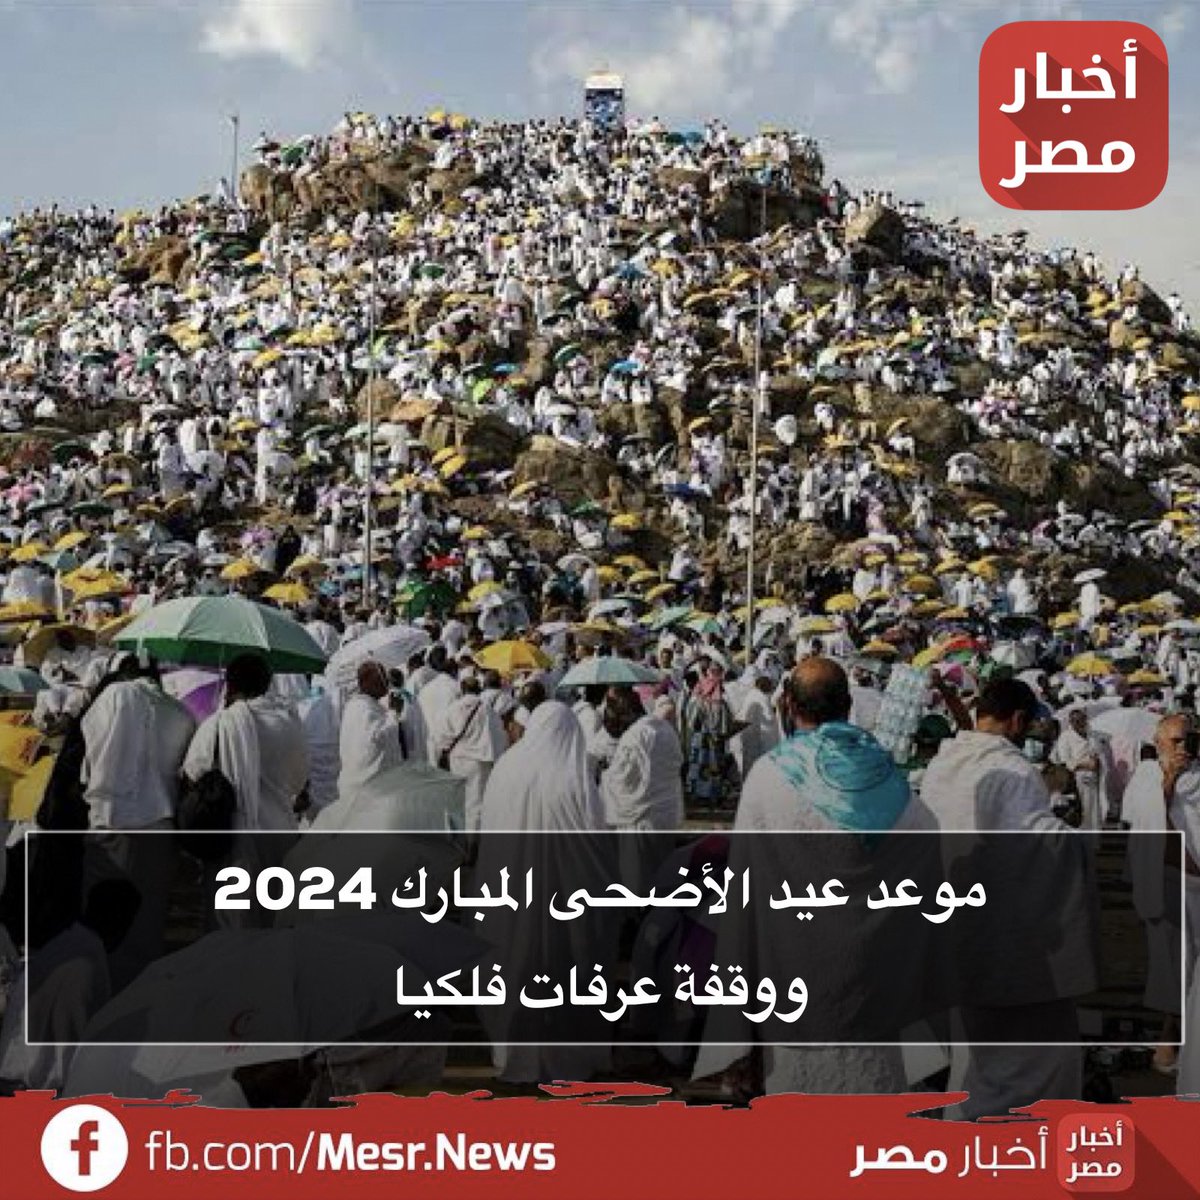 موعد عيد الأضحى المبارك 2024 ووقفة عرفات فلكيا
bit.ly/3Jz4p9o